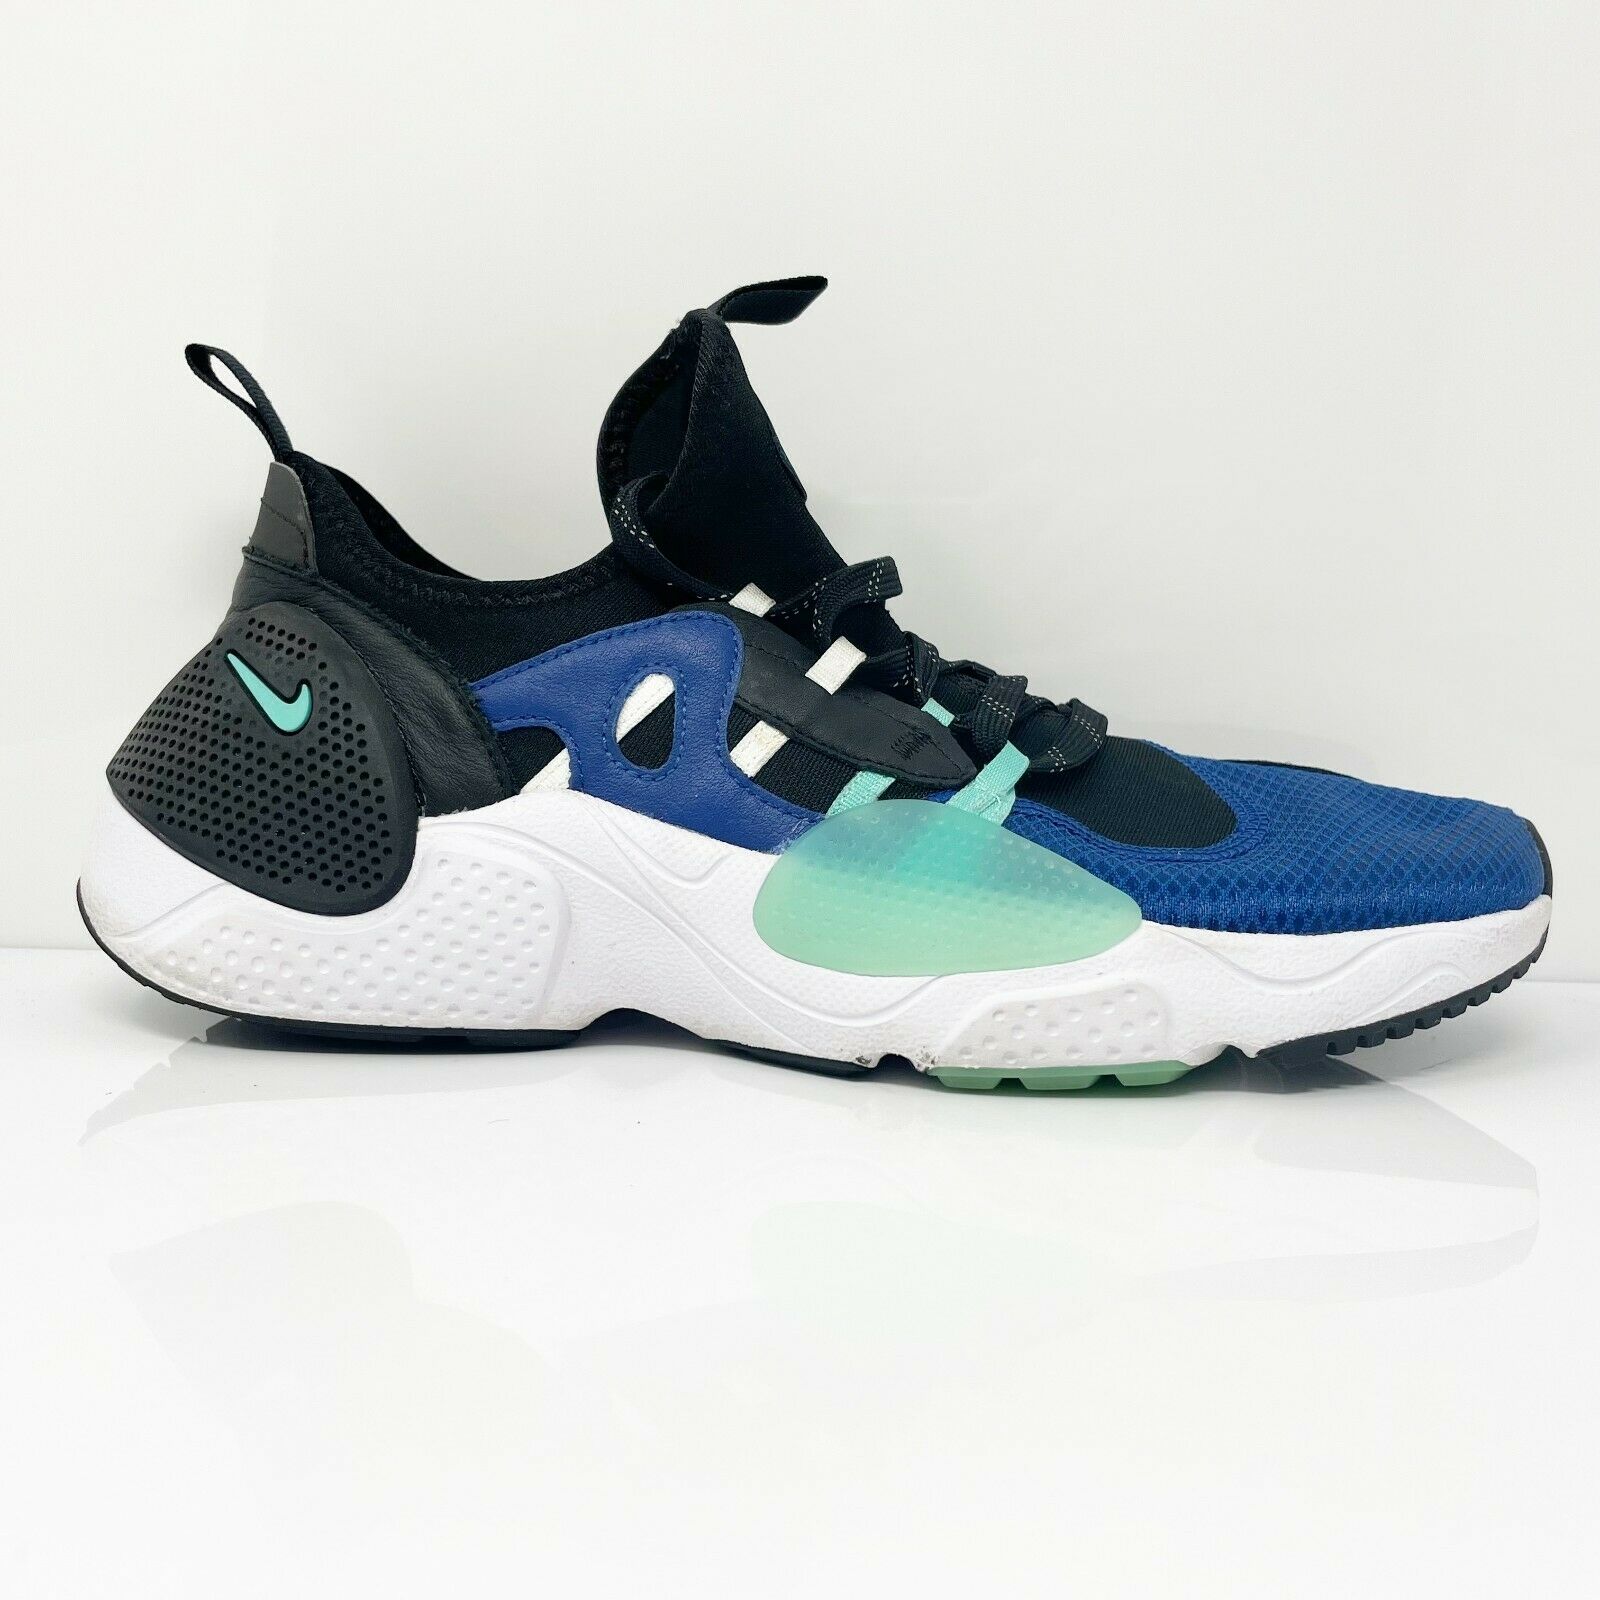 Nike Mens Air Huarache EDGE TXT BQ5205-400 Blue Basketball Shoes Sneakers 10.5